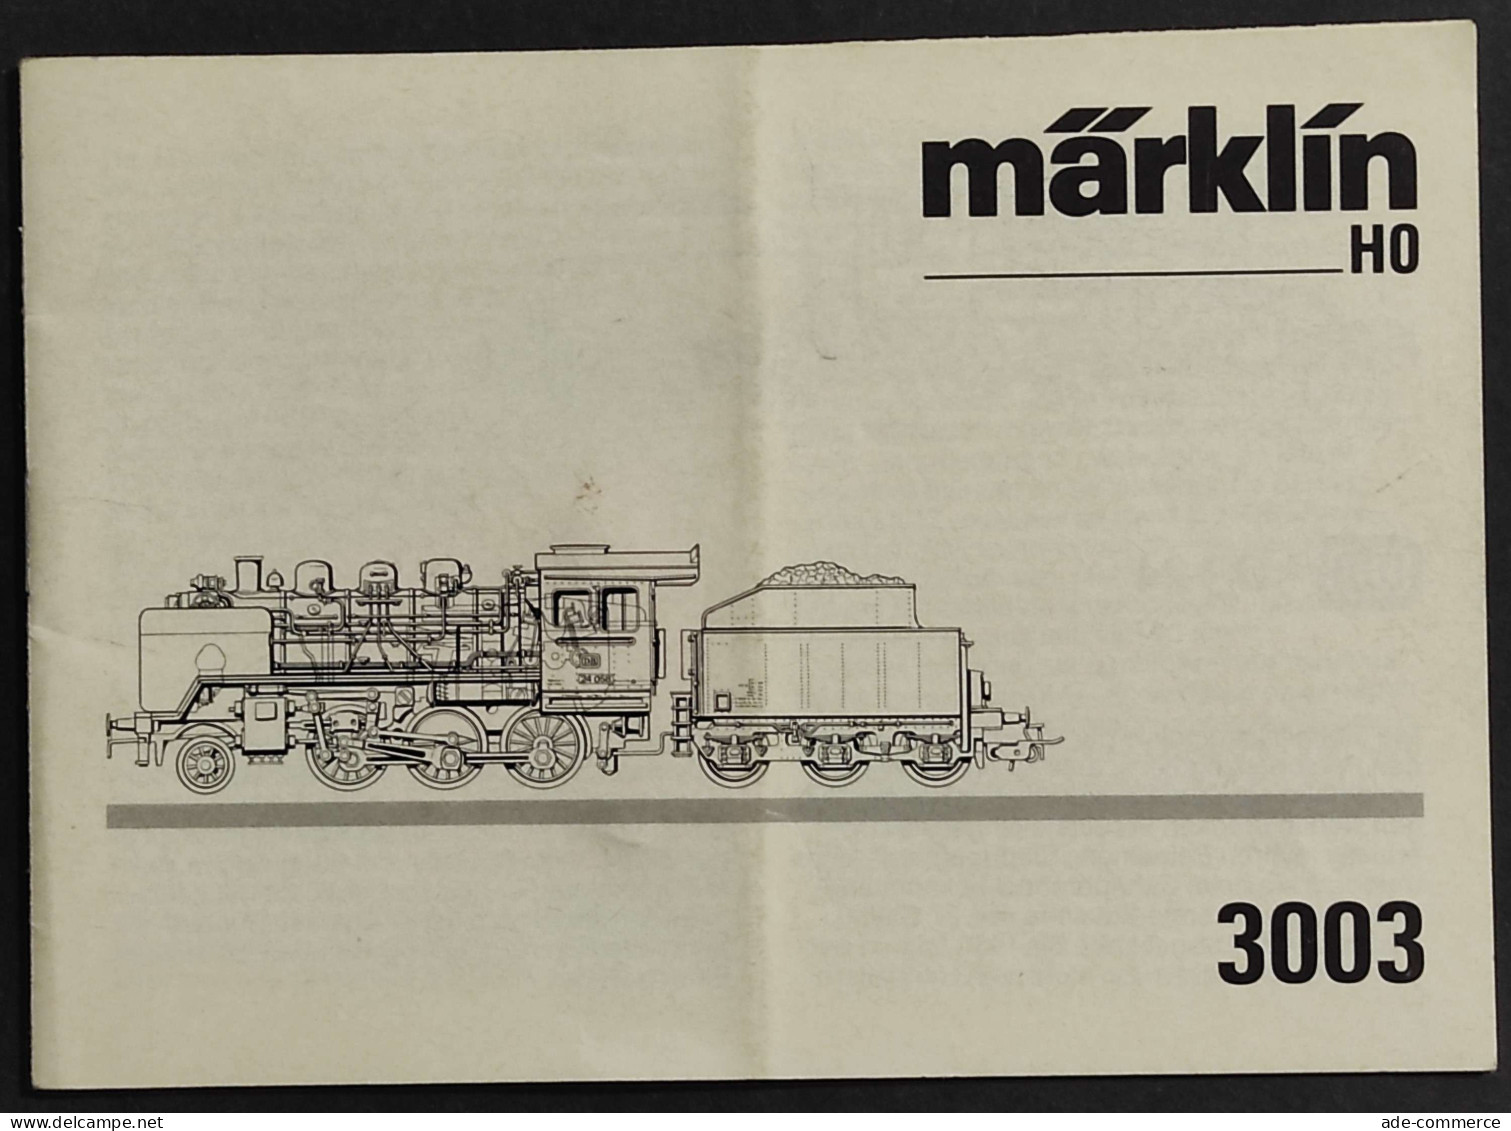 Libretto Istruzioni Marklin HO - 3003 - Modellismo Ferroviario - Ohne Zuordnung